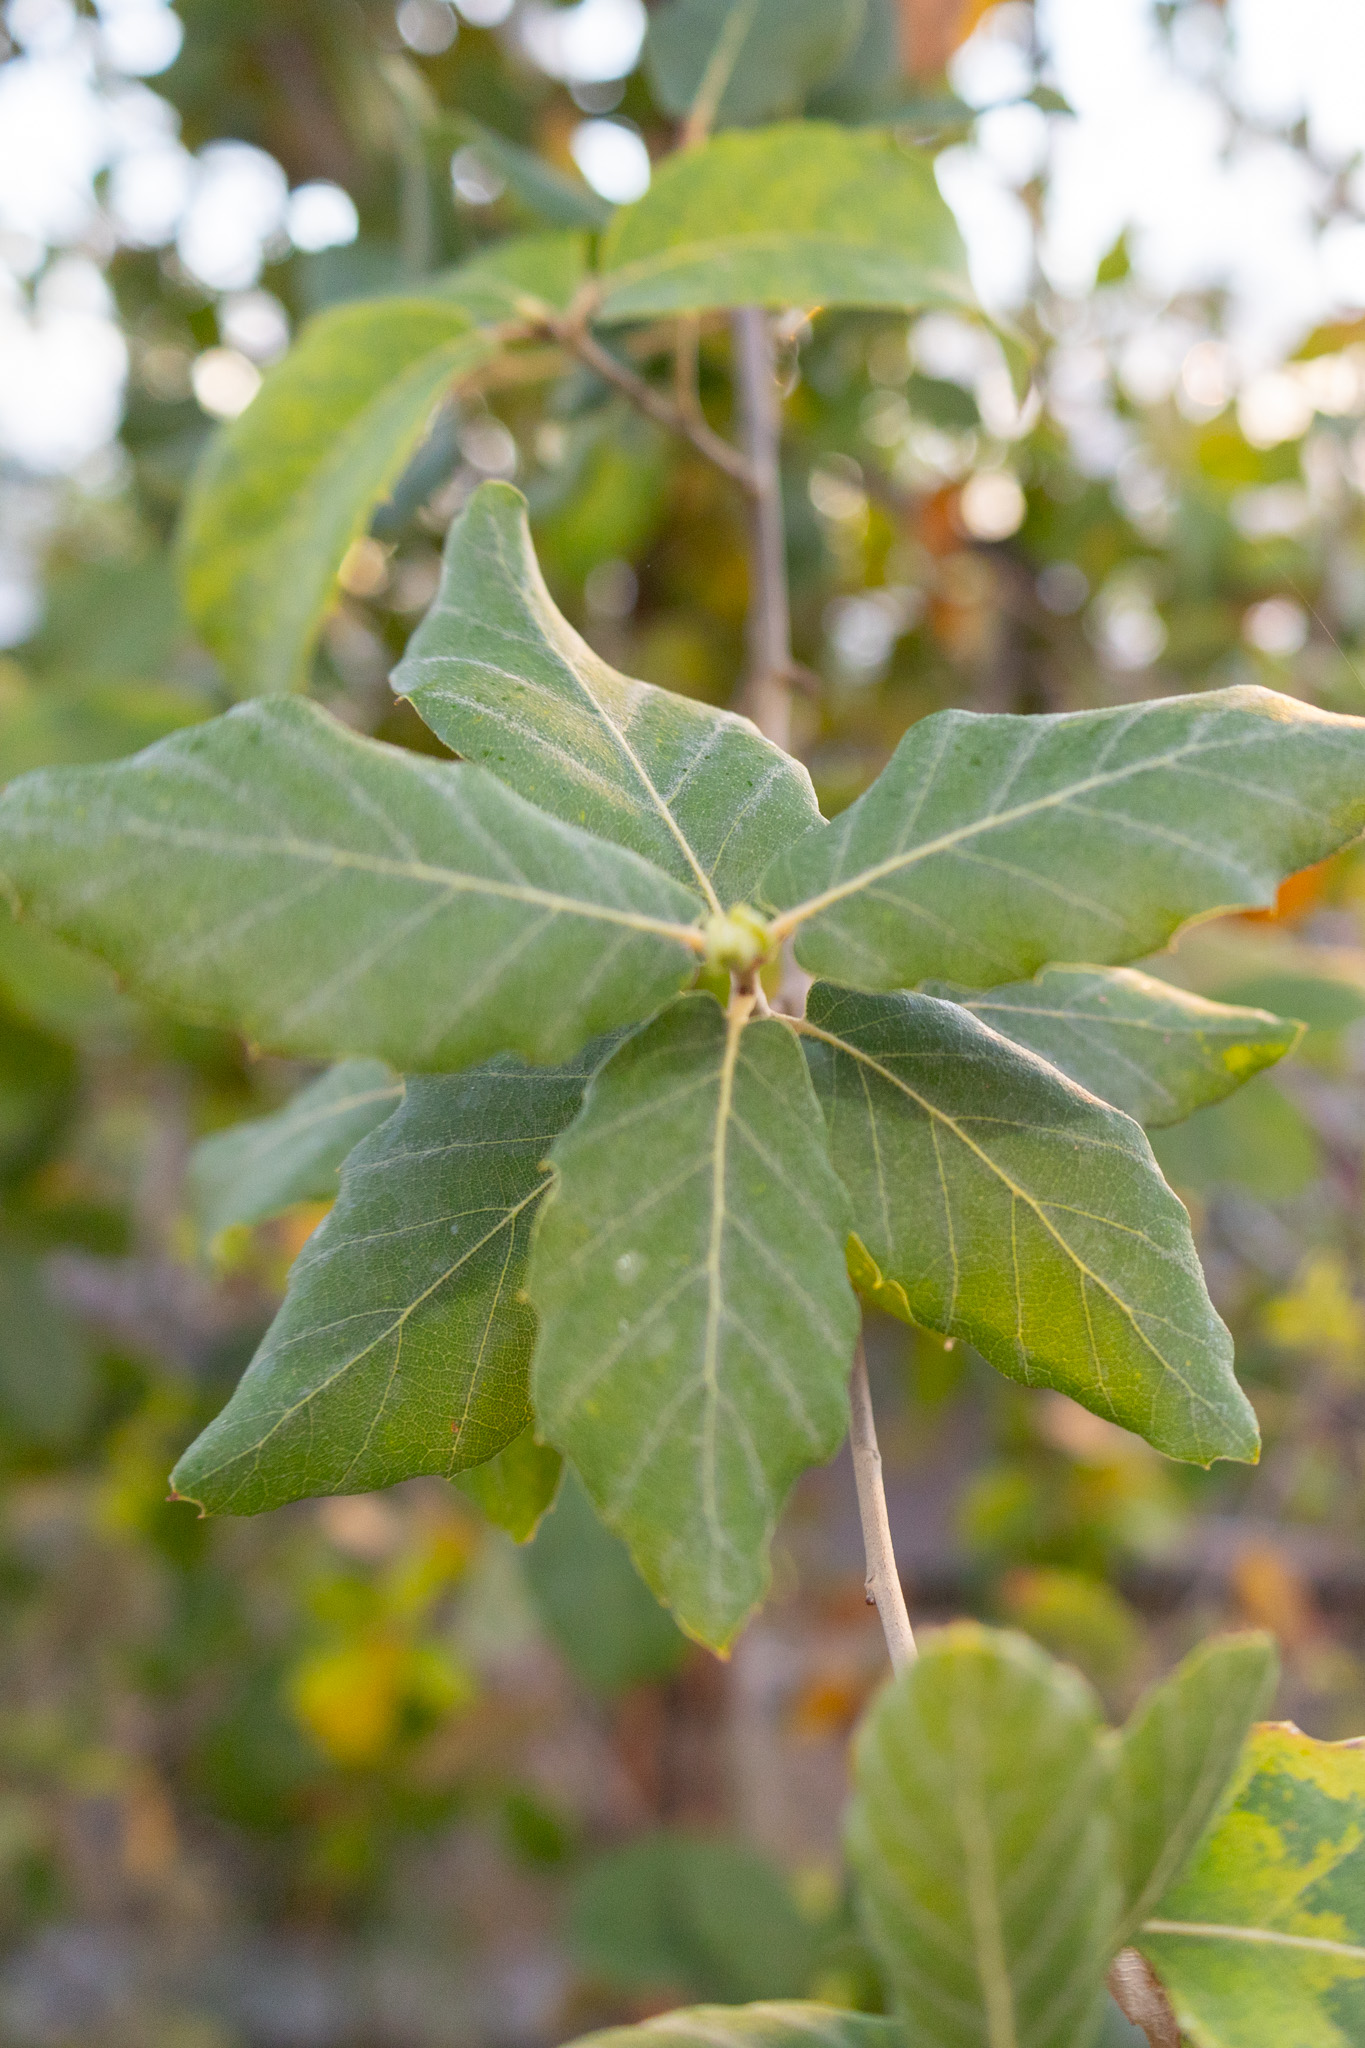 Cork oak leaf